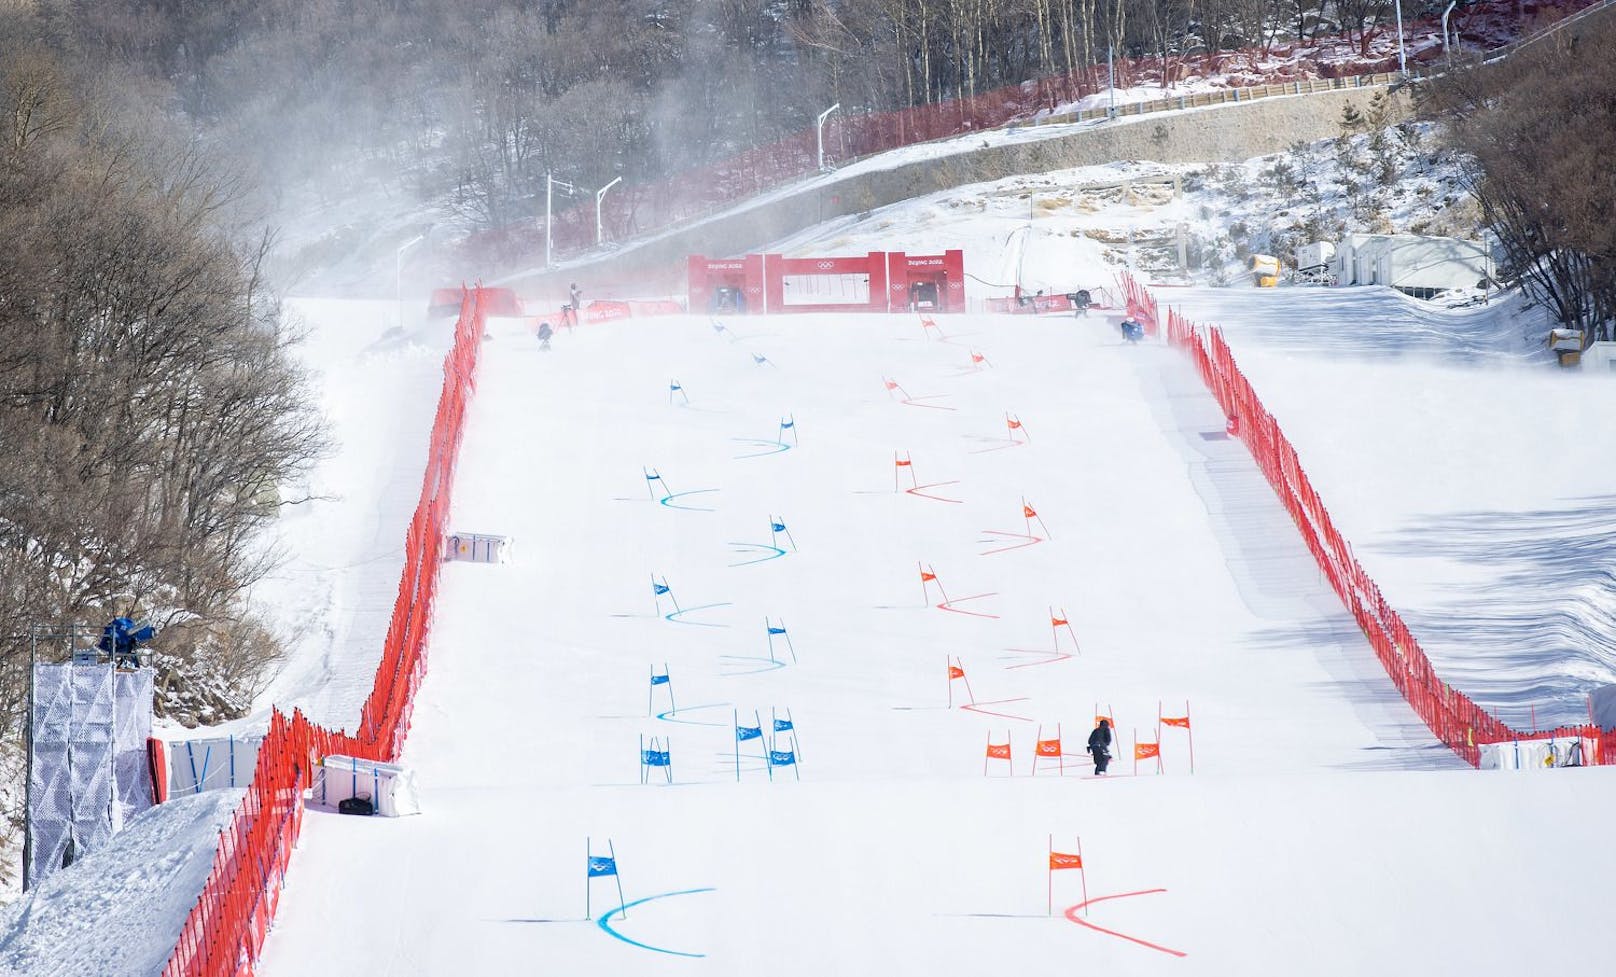 Neuer Termin für Teambewerb bringt Ski-Stars in Zeitnot